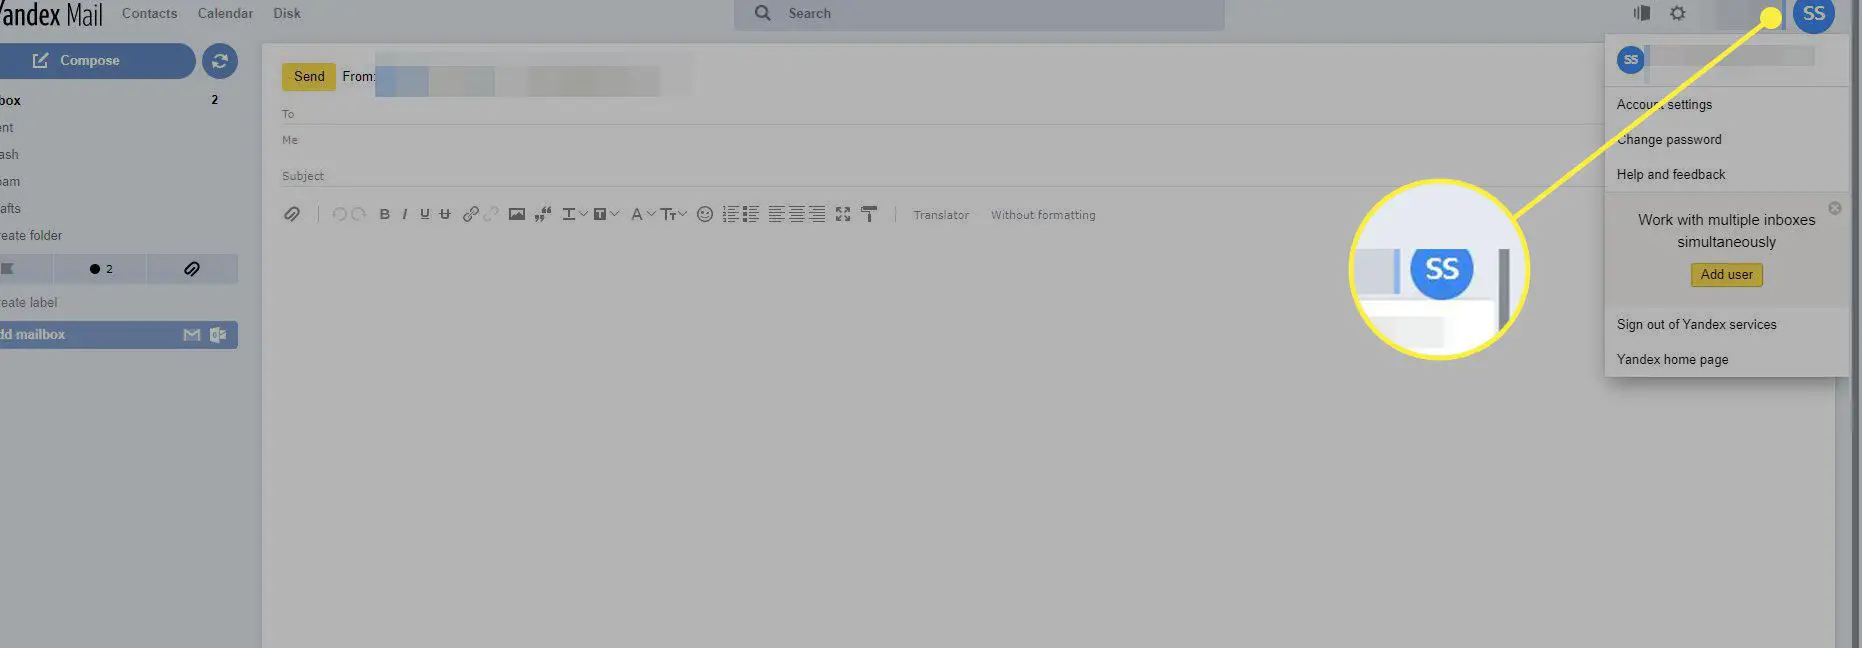 Uma captura de tela do Yandex Mail com o ícone da conta destacado